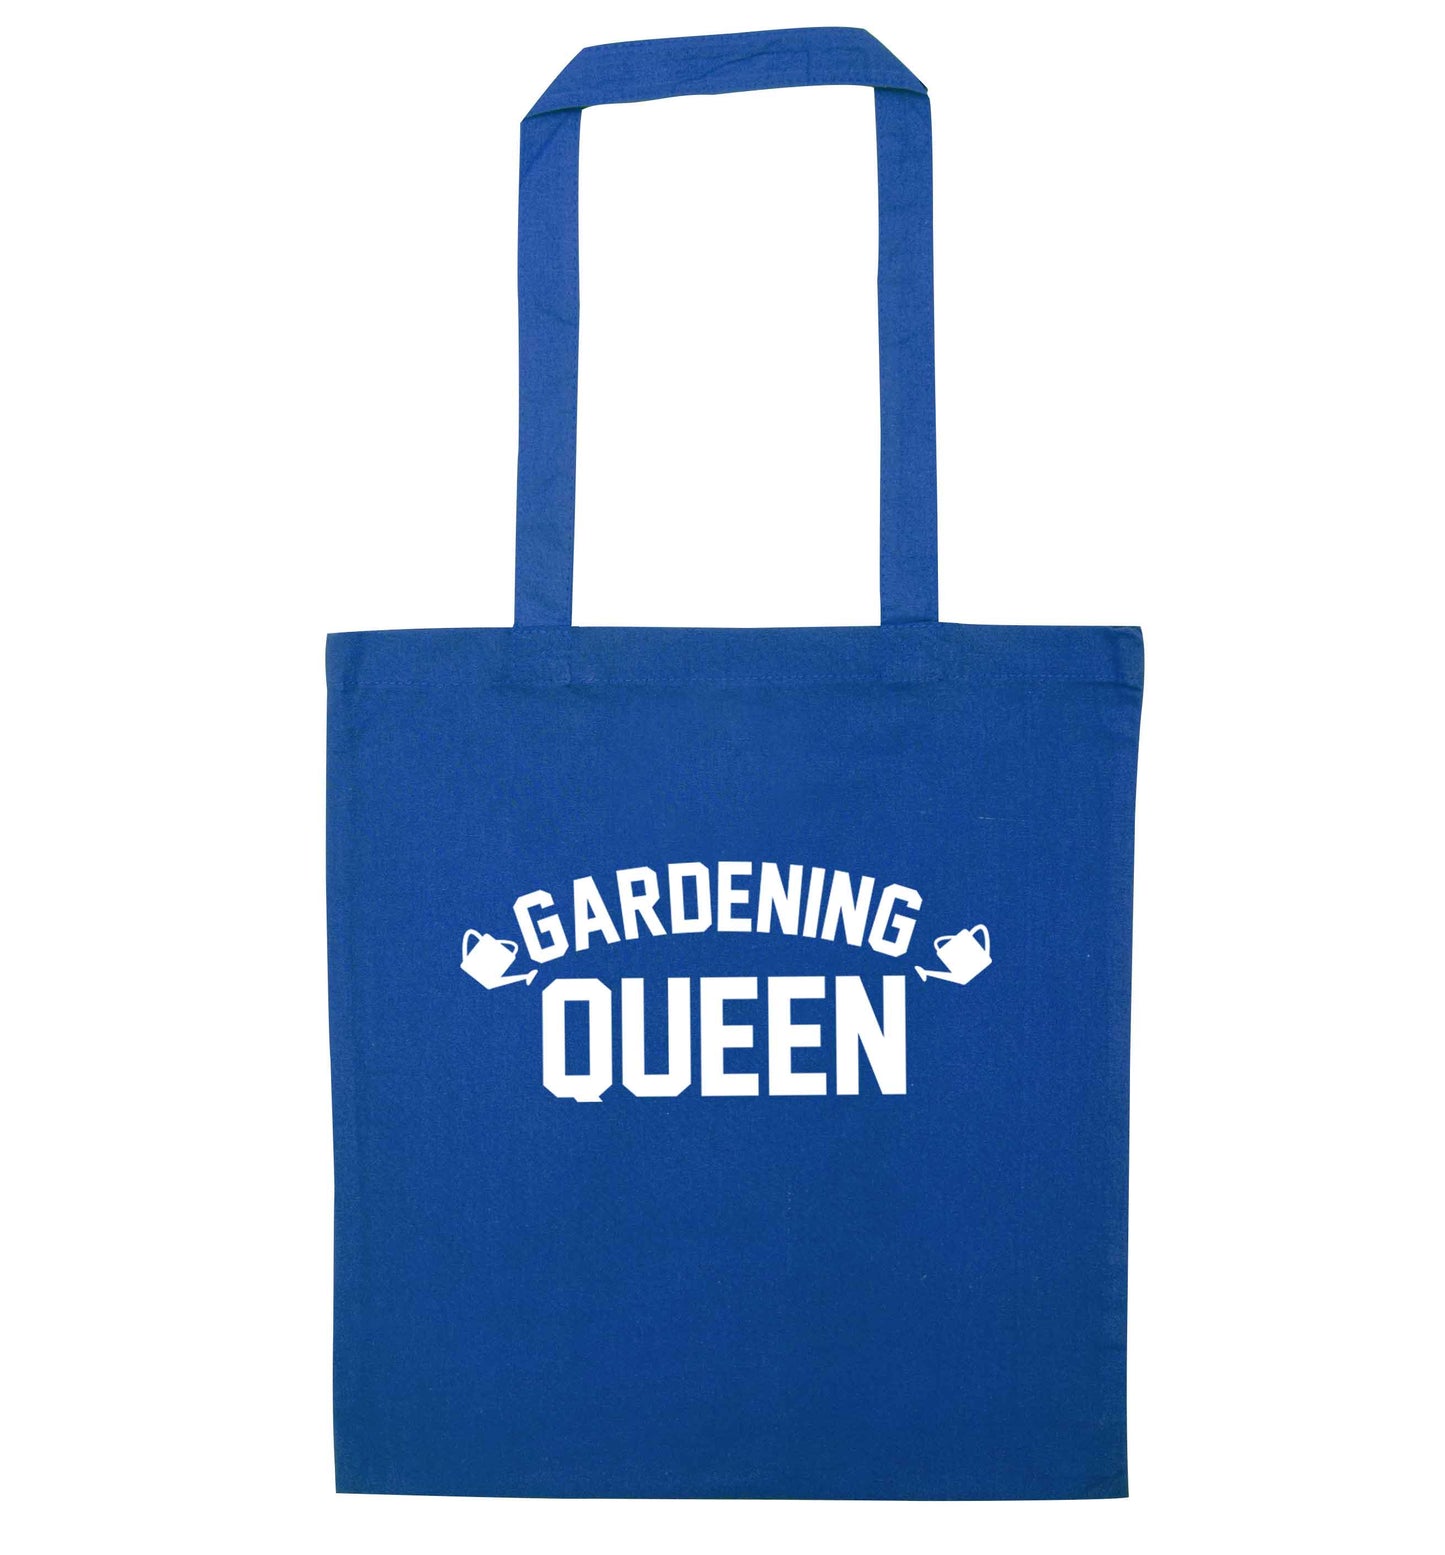 Gardening queen blue tote bag